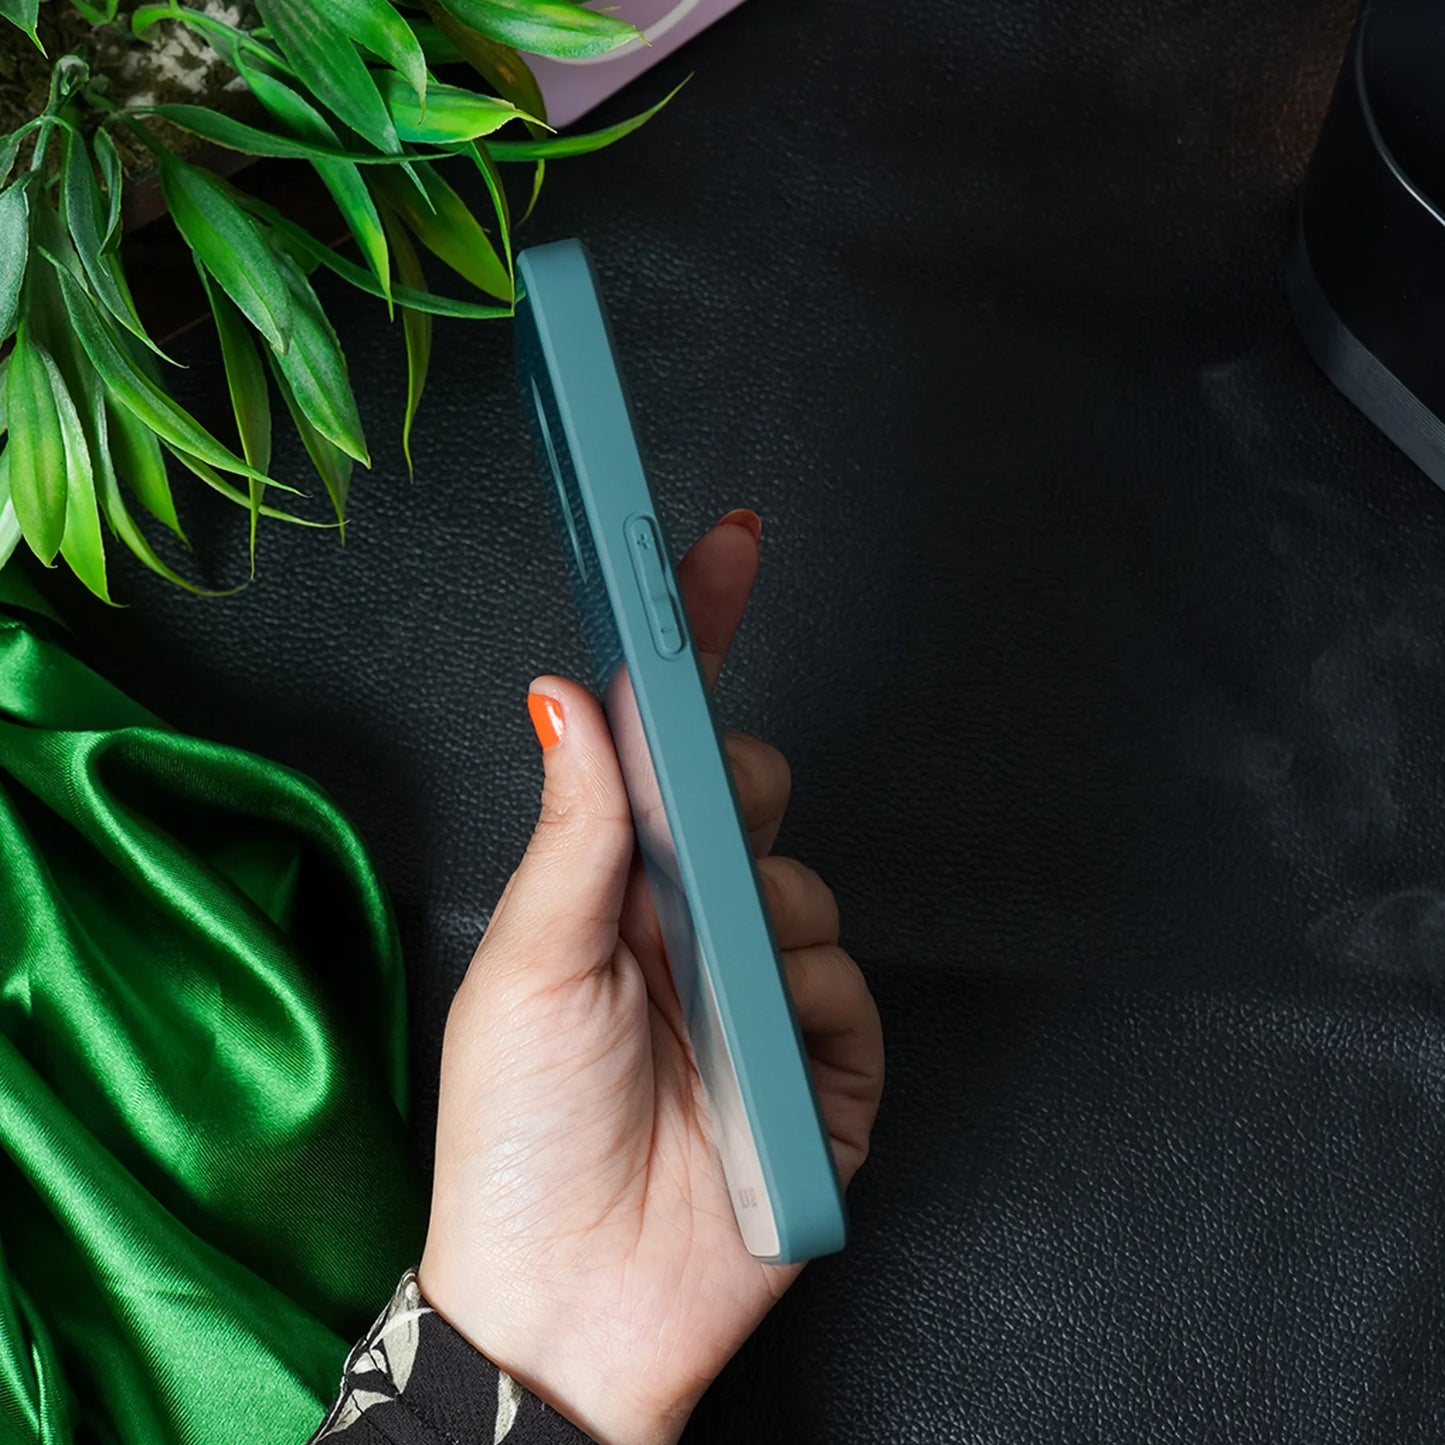 OnePlus 6T/ 7 Pro Smokey Pattern Glass Case